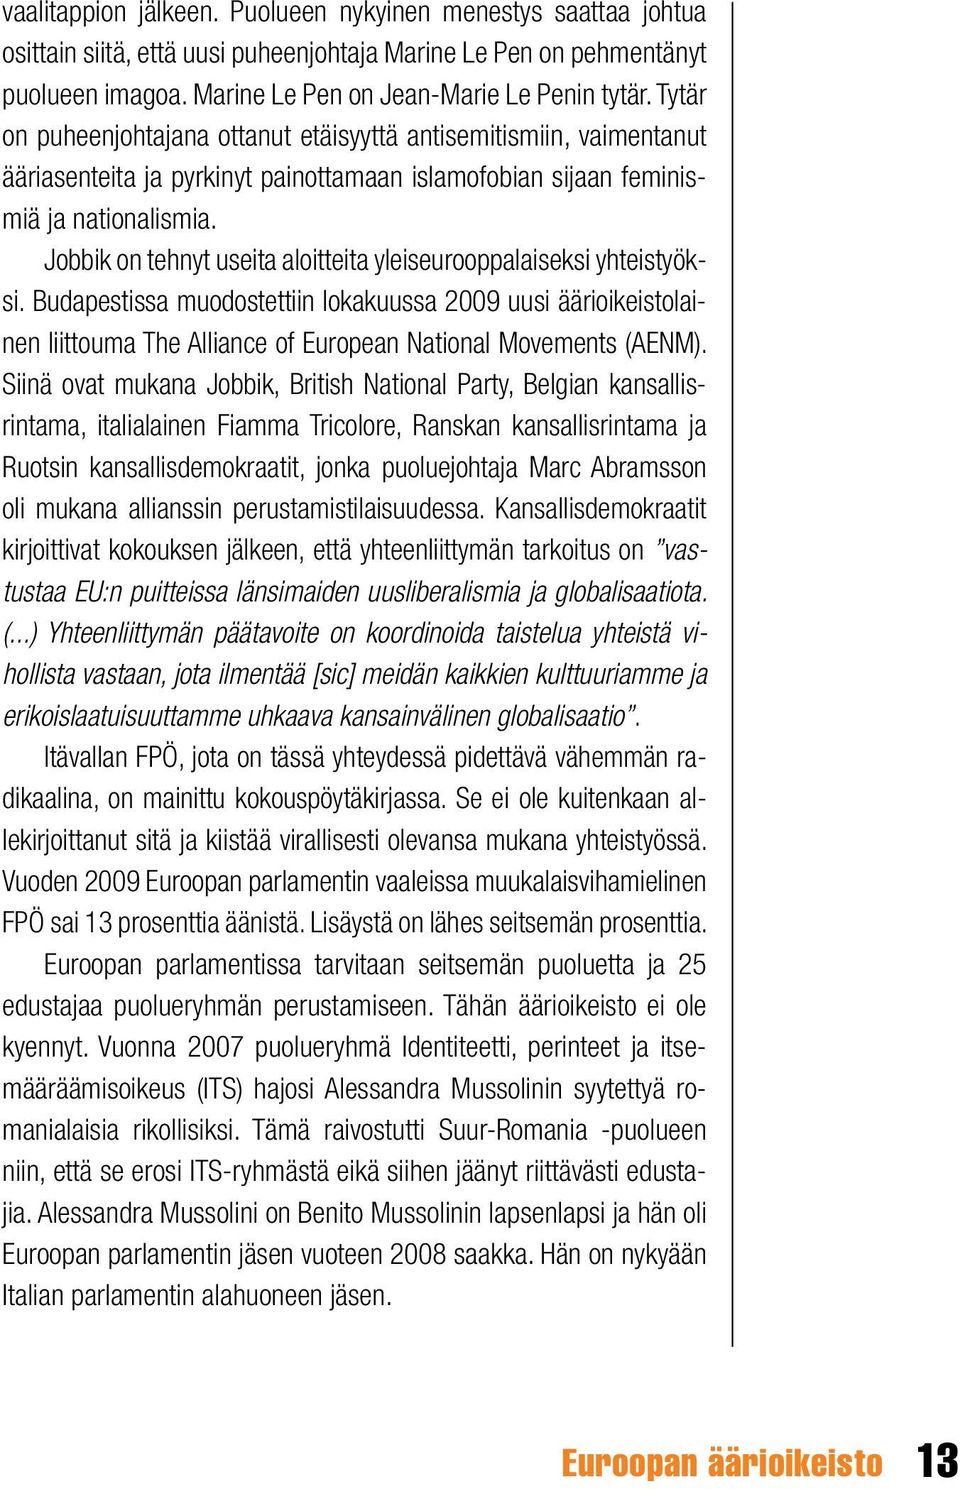 Jobbik on tehnyt useita aloitteita yleiseurooppalaiseksi yhteistyöksi. Budapestissa muodostettiin lokakuussa 2009 uusi äärioikeistolainen liittouma The Alliance of European National Movements (AENM).